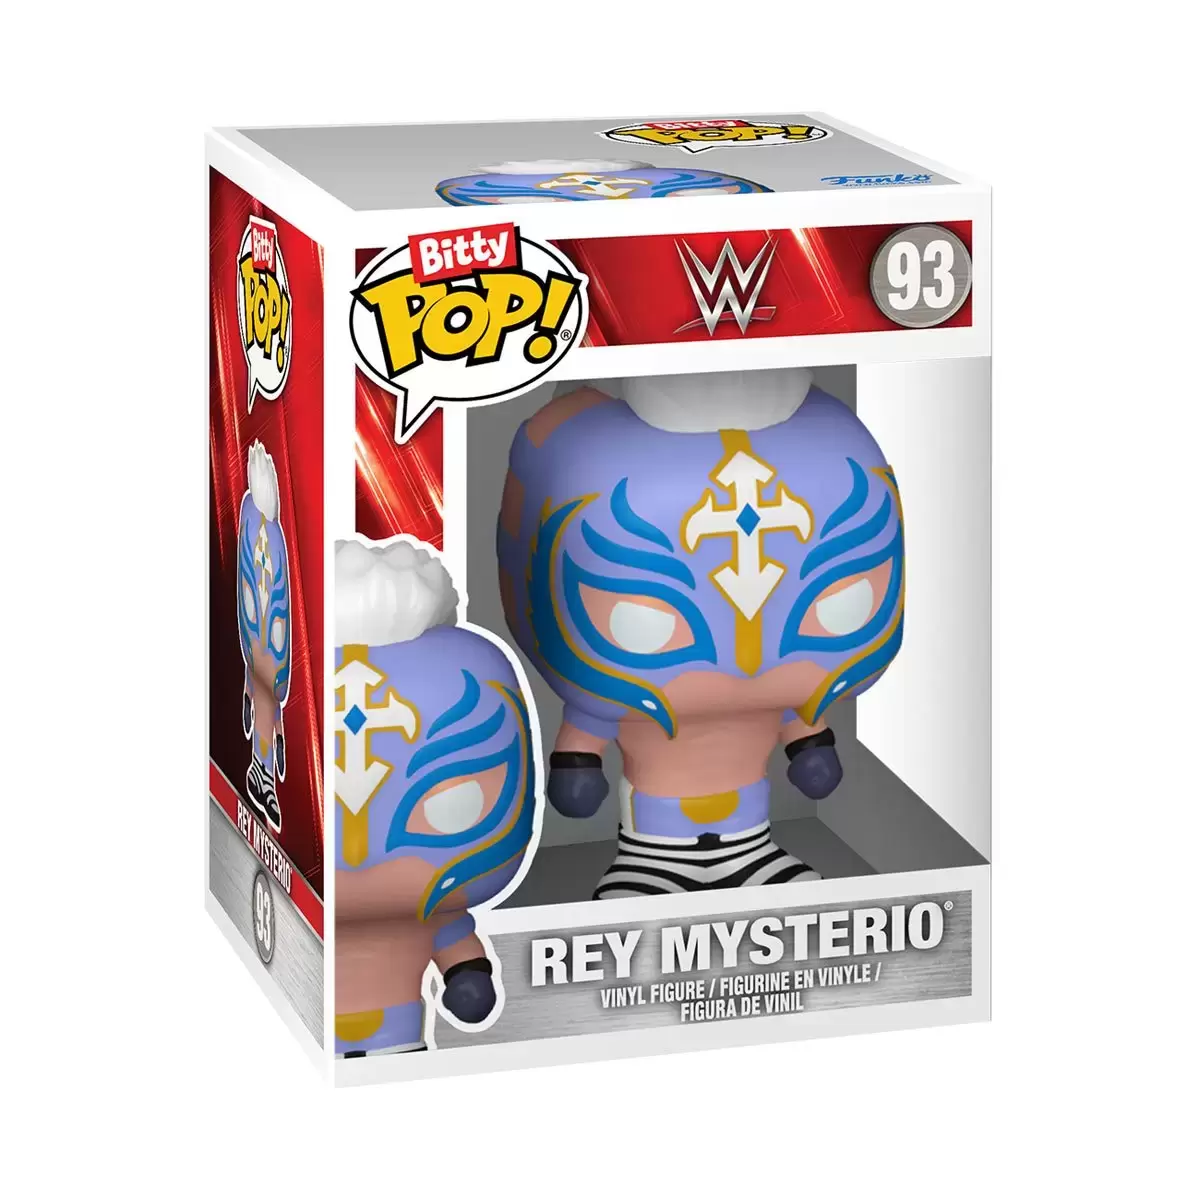 Bitty POP! - WWE - Rey Mysterio